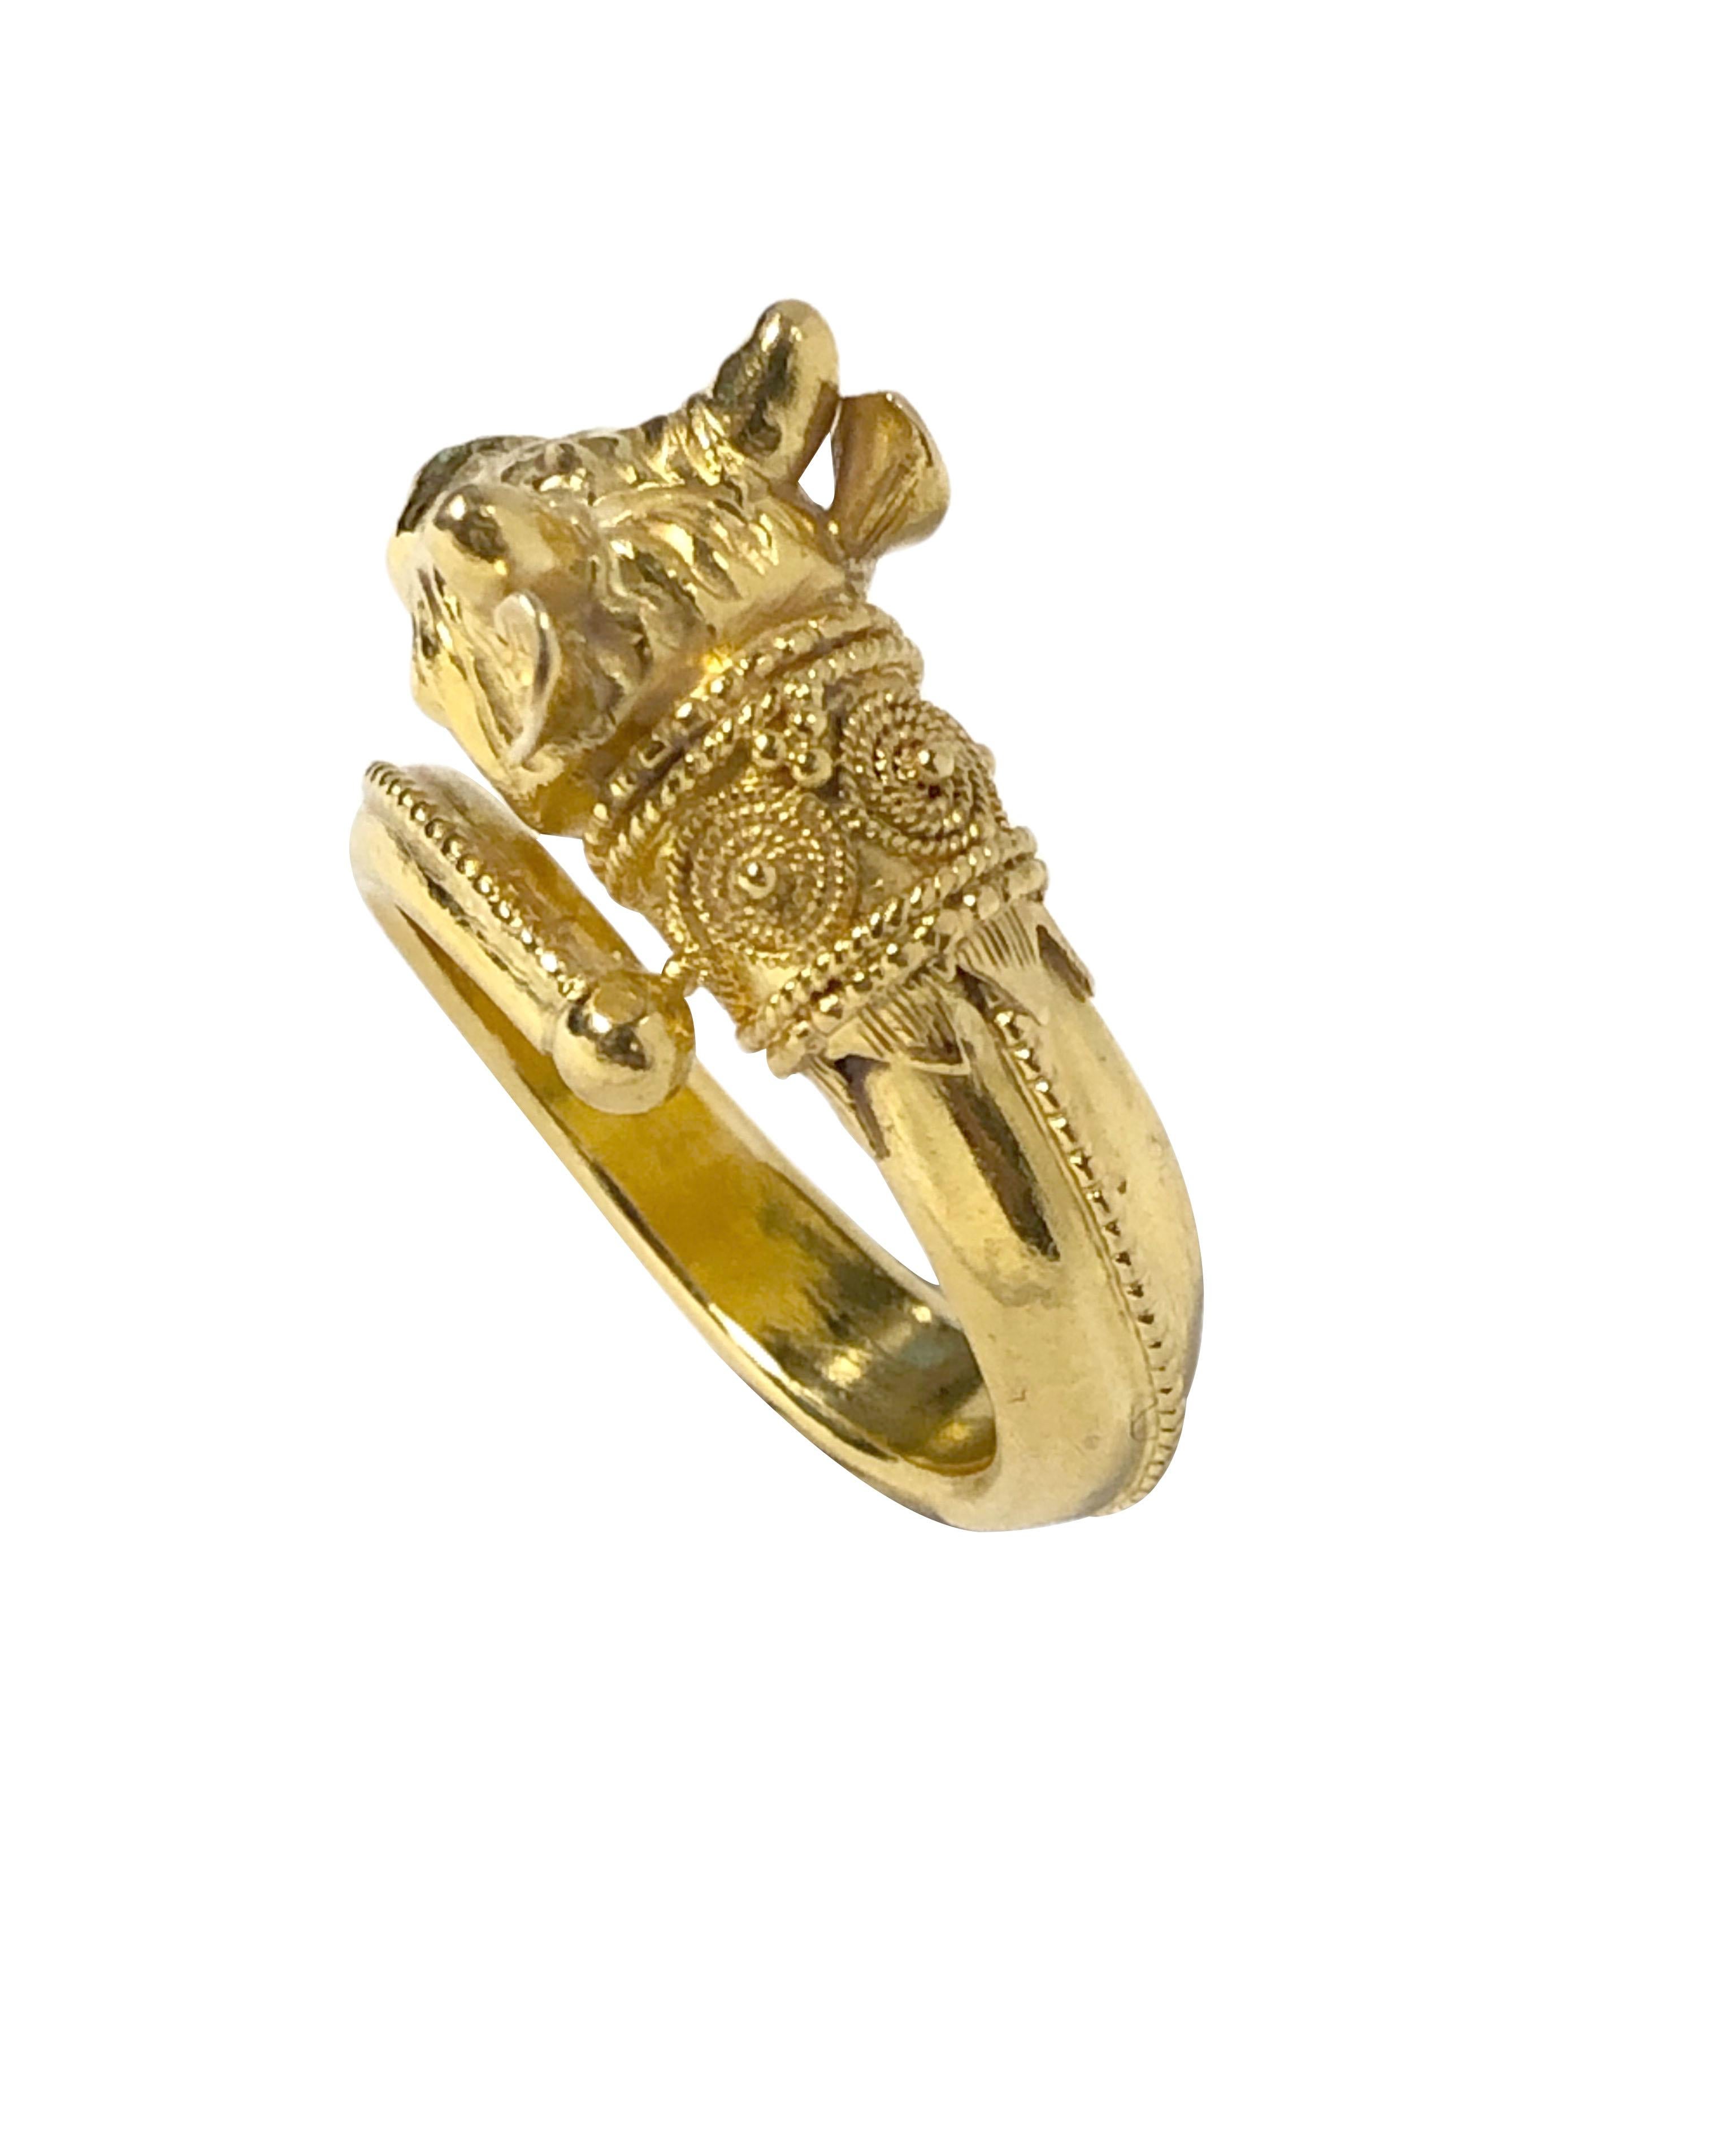 Ilias Lalaounis von Griechenland 18K Gelbgold Rams Kopf Ring in einem antiken römischen Stil. die Spitze des Rings misst 5/8 X 3/8 Zoll. Fingergröße 6. 